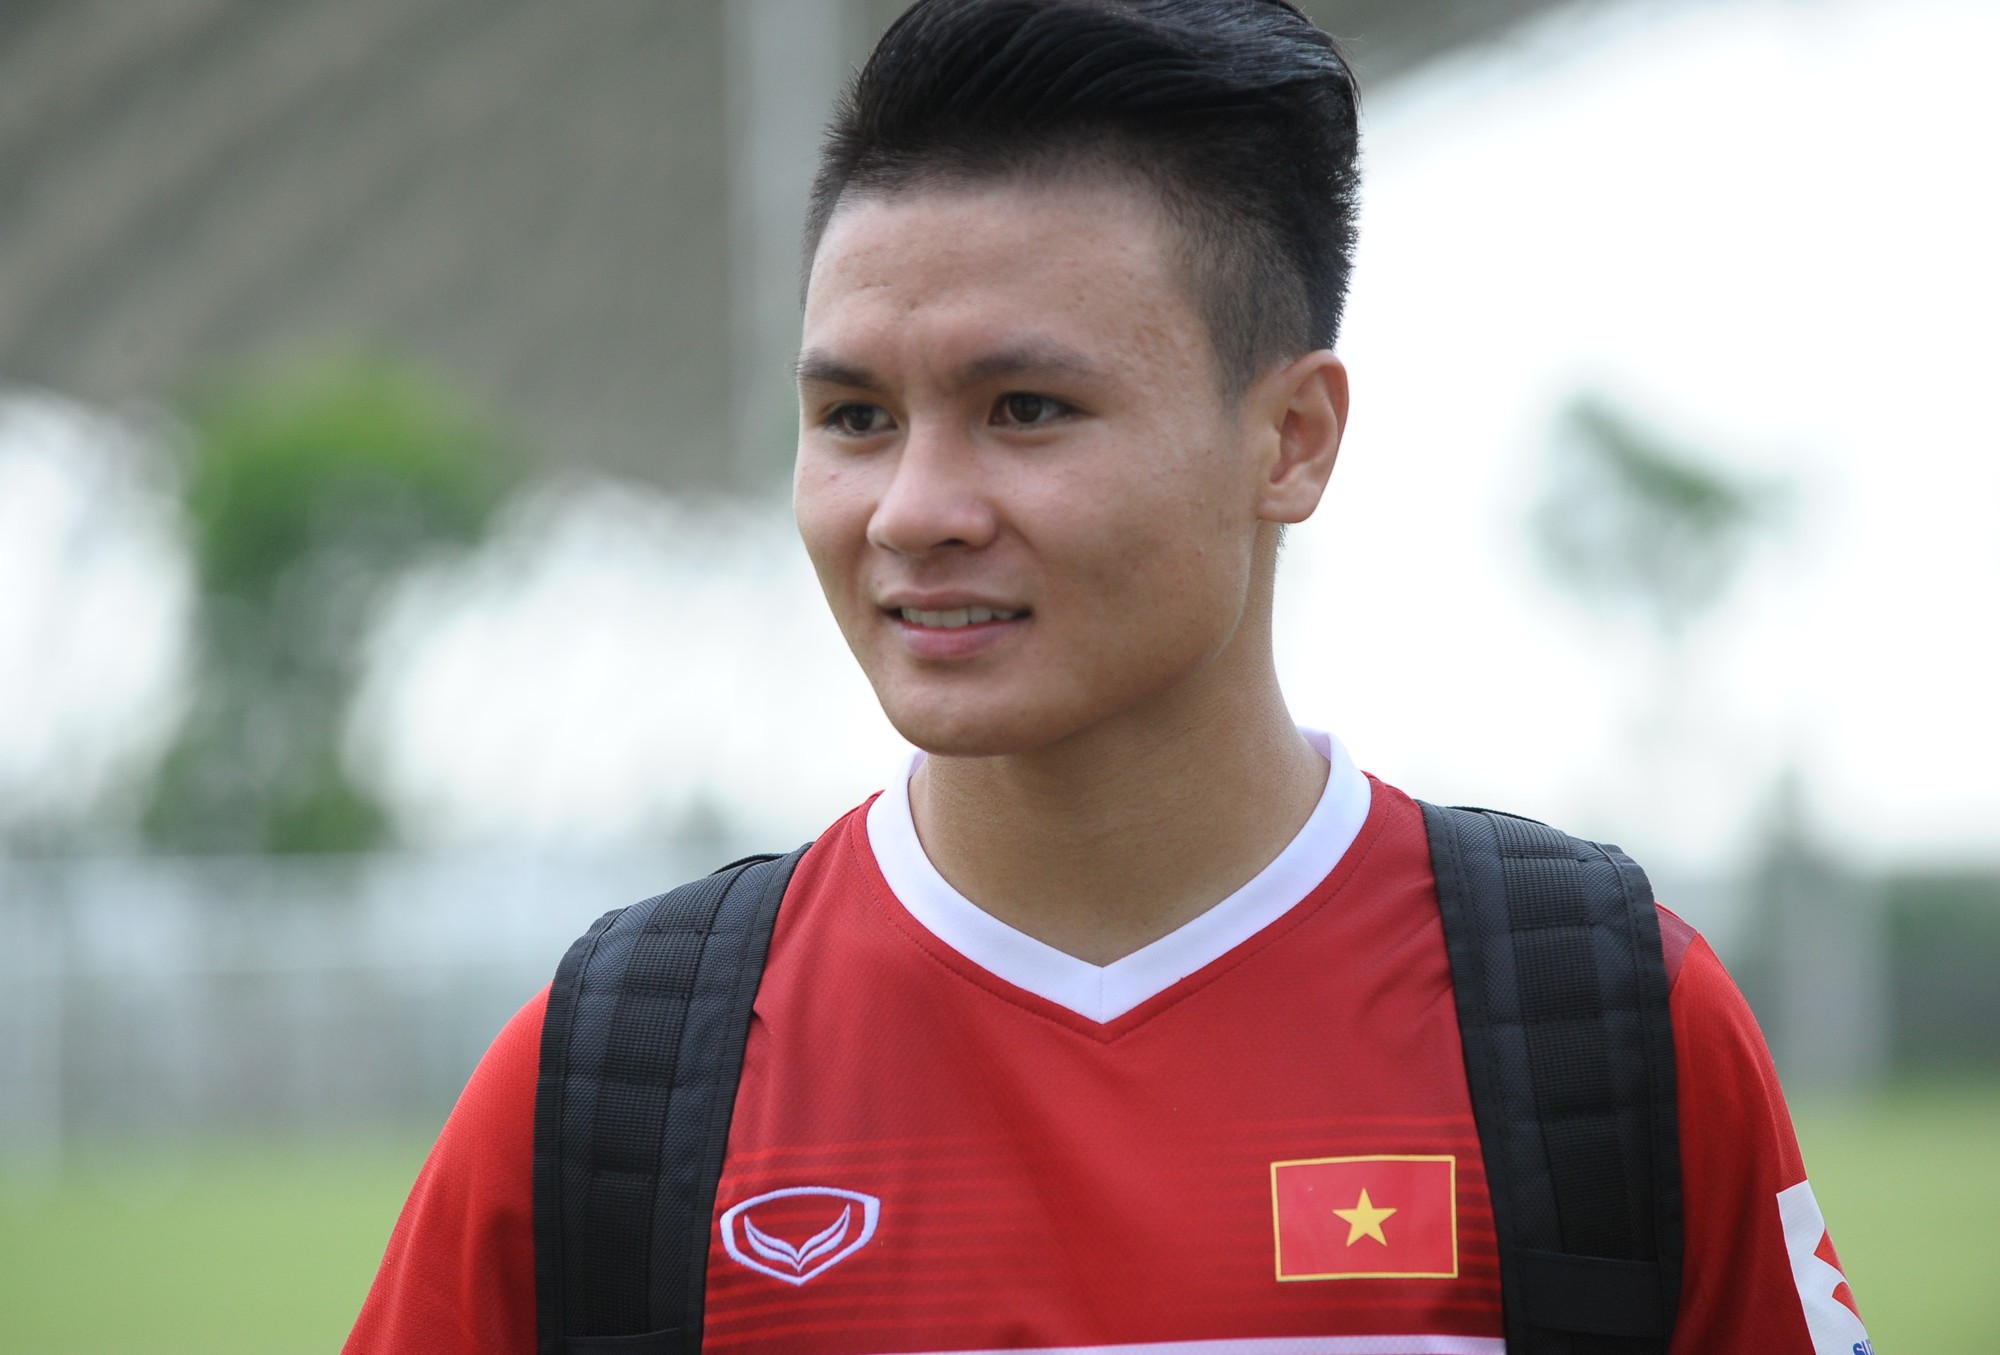 Thời trang tóc là một trong những yếu tố quan trọng của cầu thủ bóng đá và U23 Việt Nam không phải là ngoại lệ. Hãy xem ảnh liên quan để khám phá những kiểu tóc độc đáo và cá tính của các cầu thủ trẻ này!